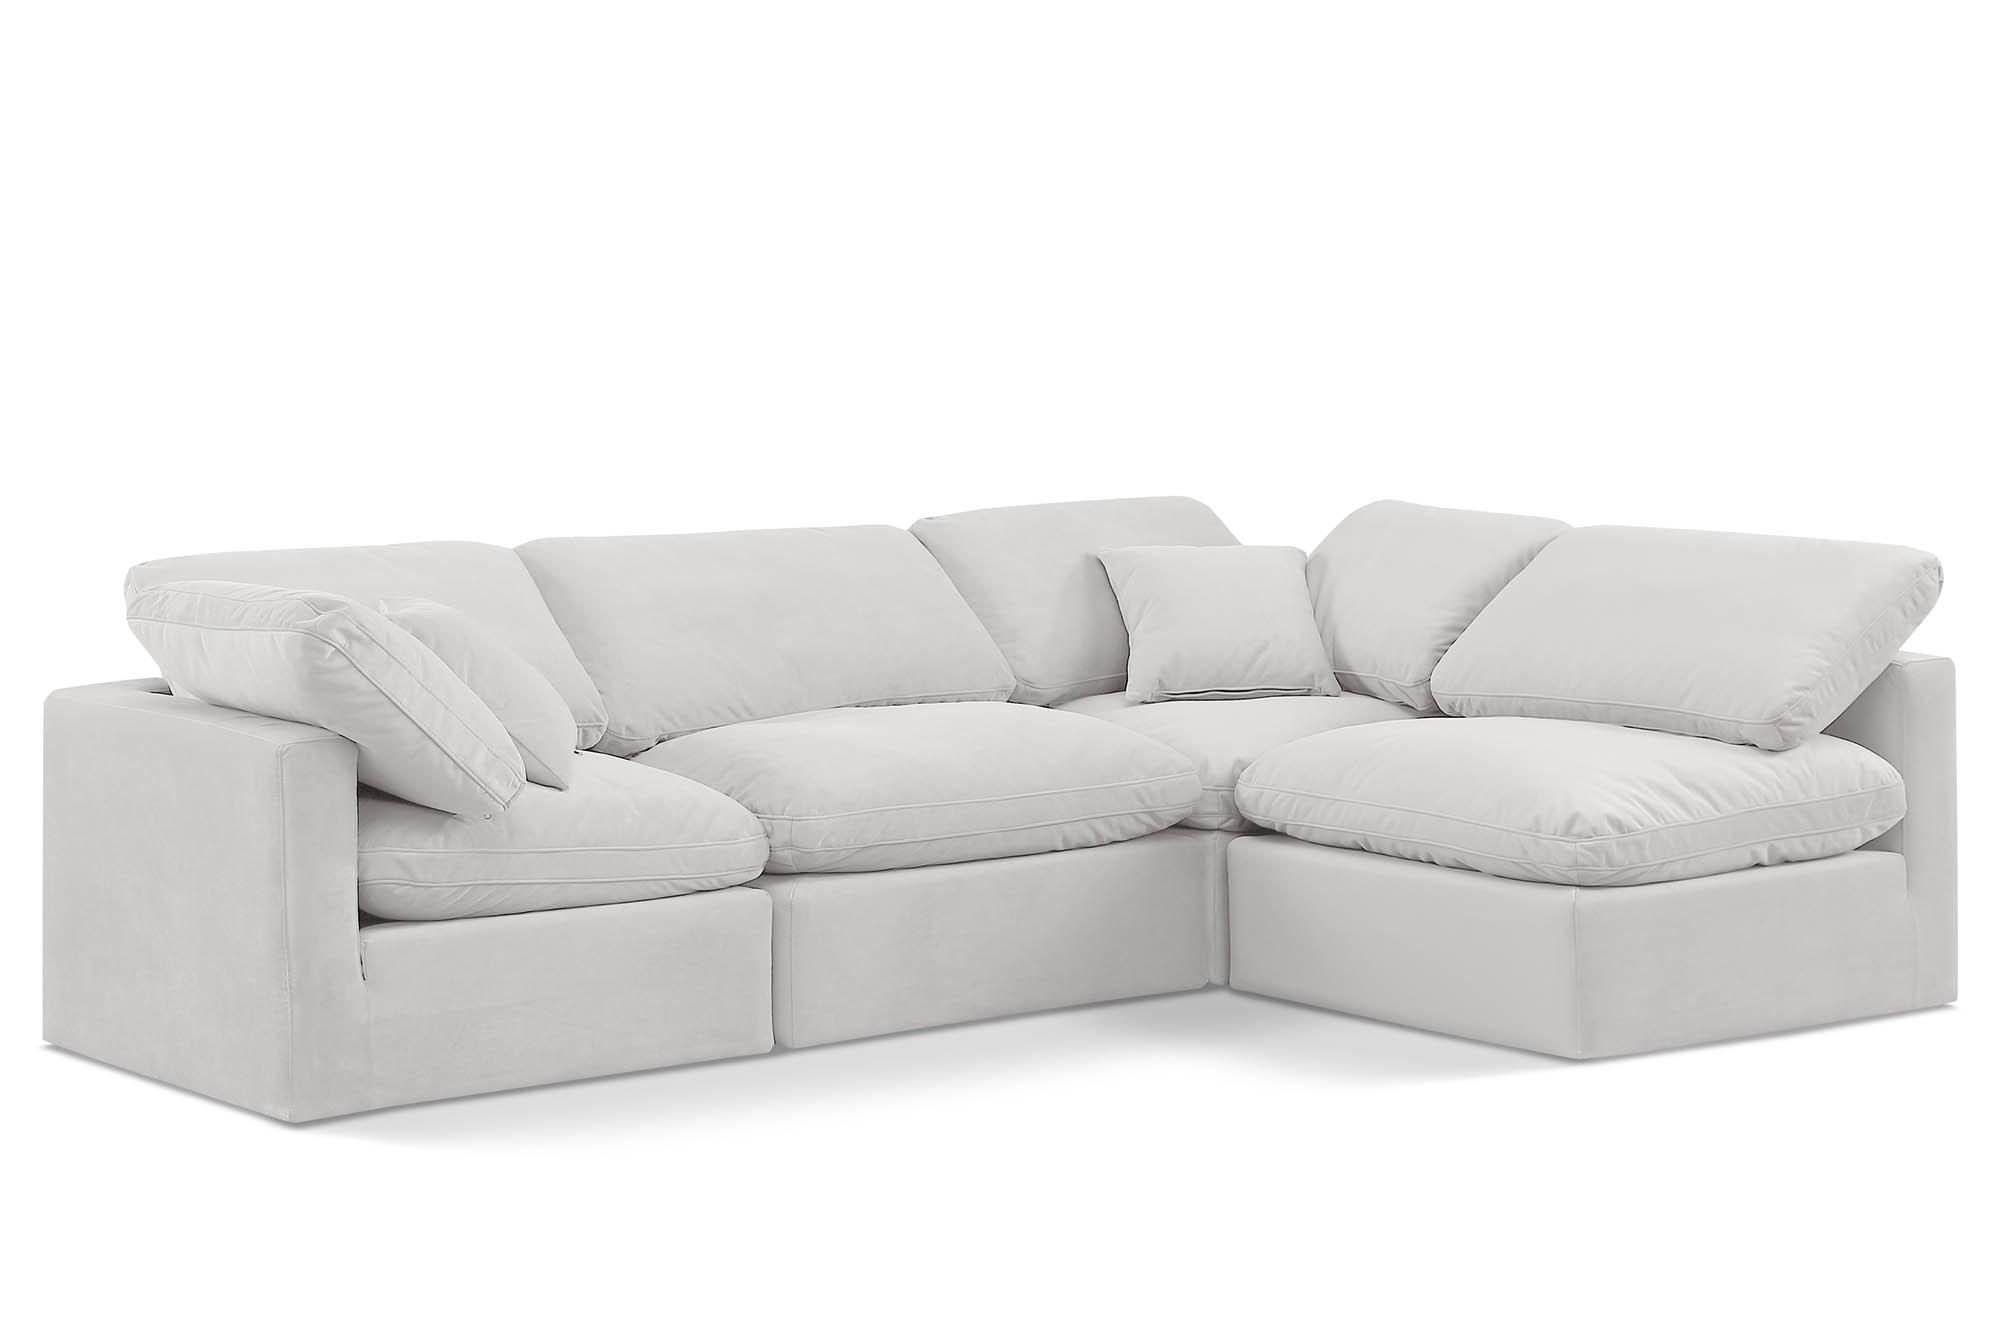 Contemporary, Modern Modular Sectional Sofa INDULGE 147Cream-Sec4B 147Cream-Sec4B in Cream Velvet